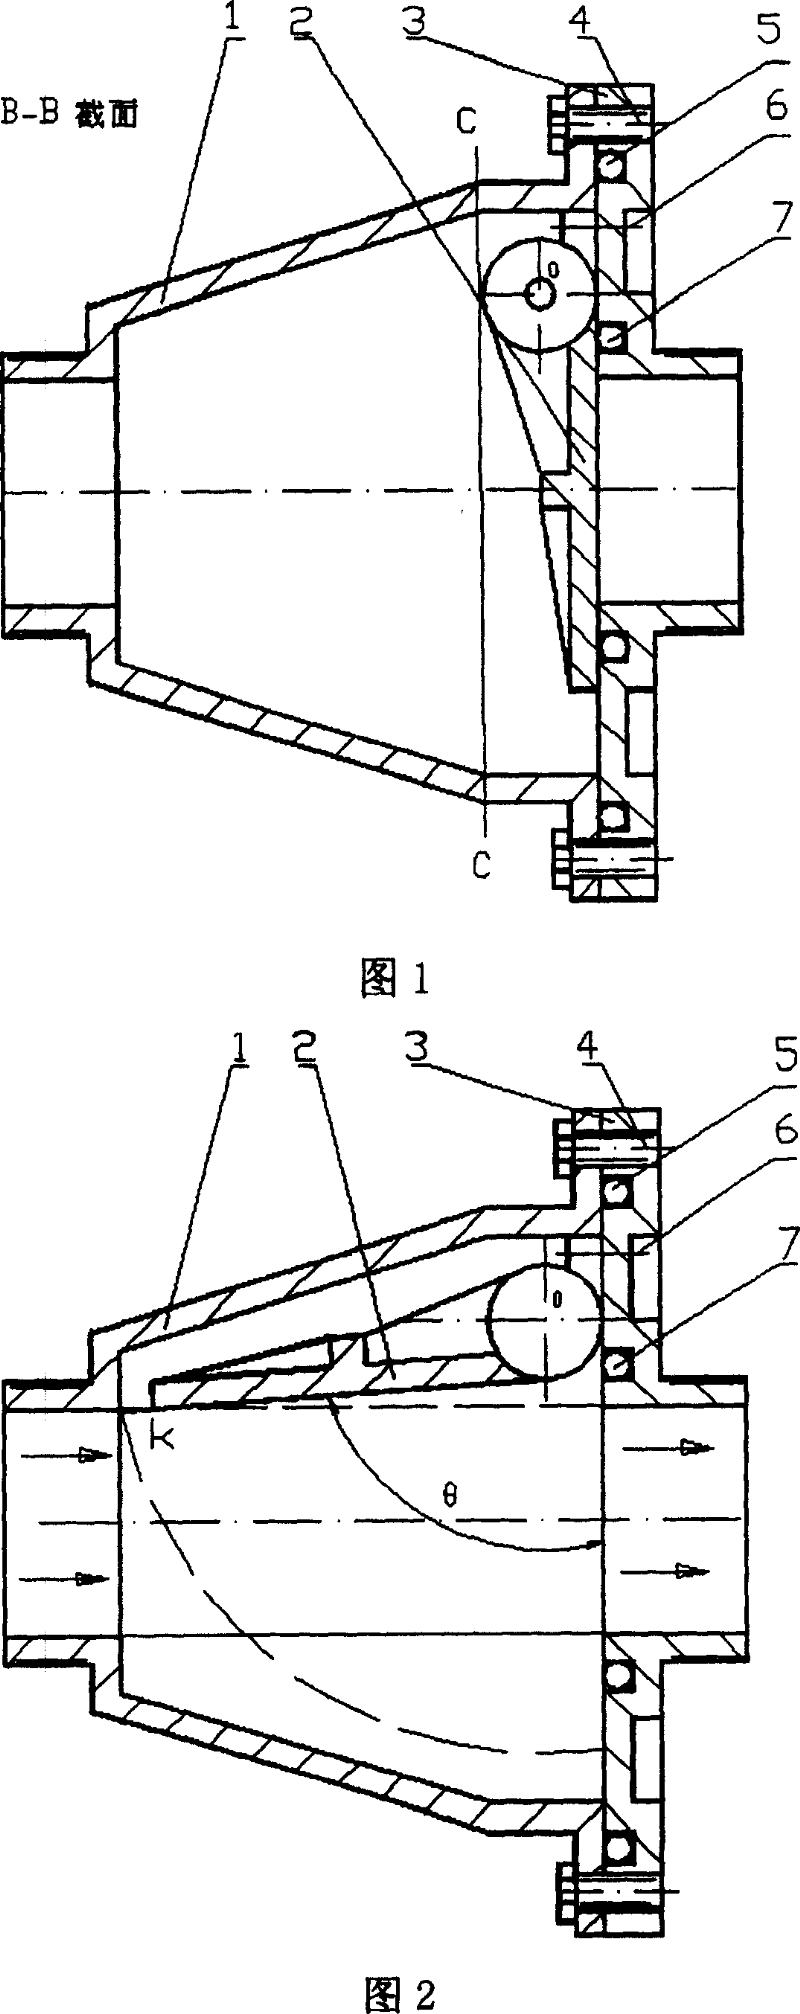 Pendulum type on-off valve